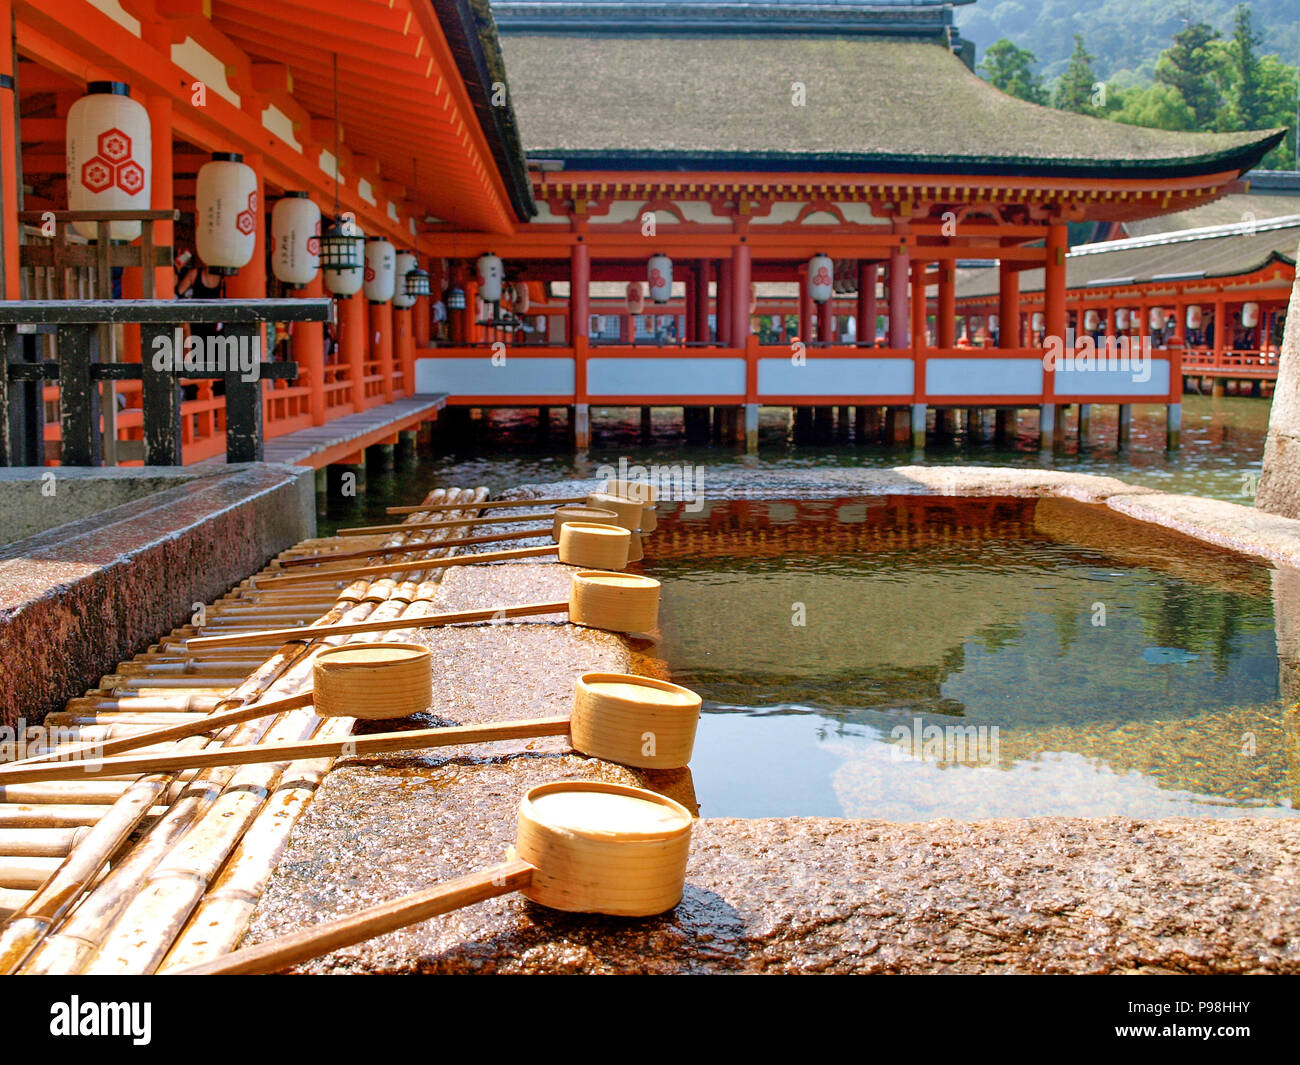 Itsukushima shrine in Japan Stock Photo